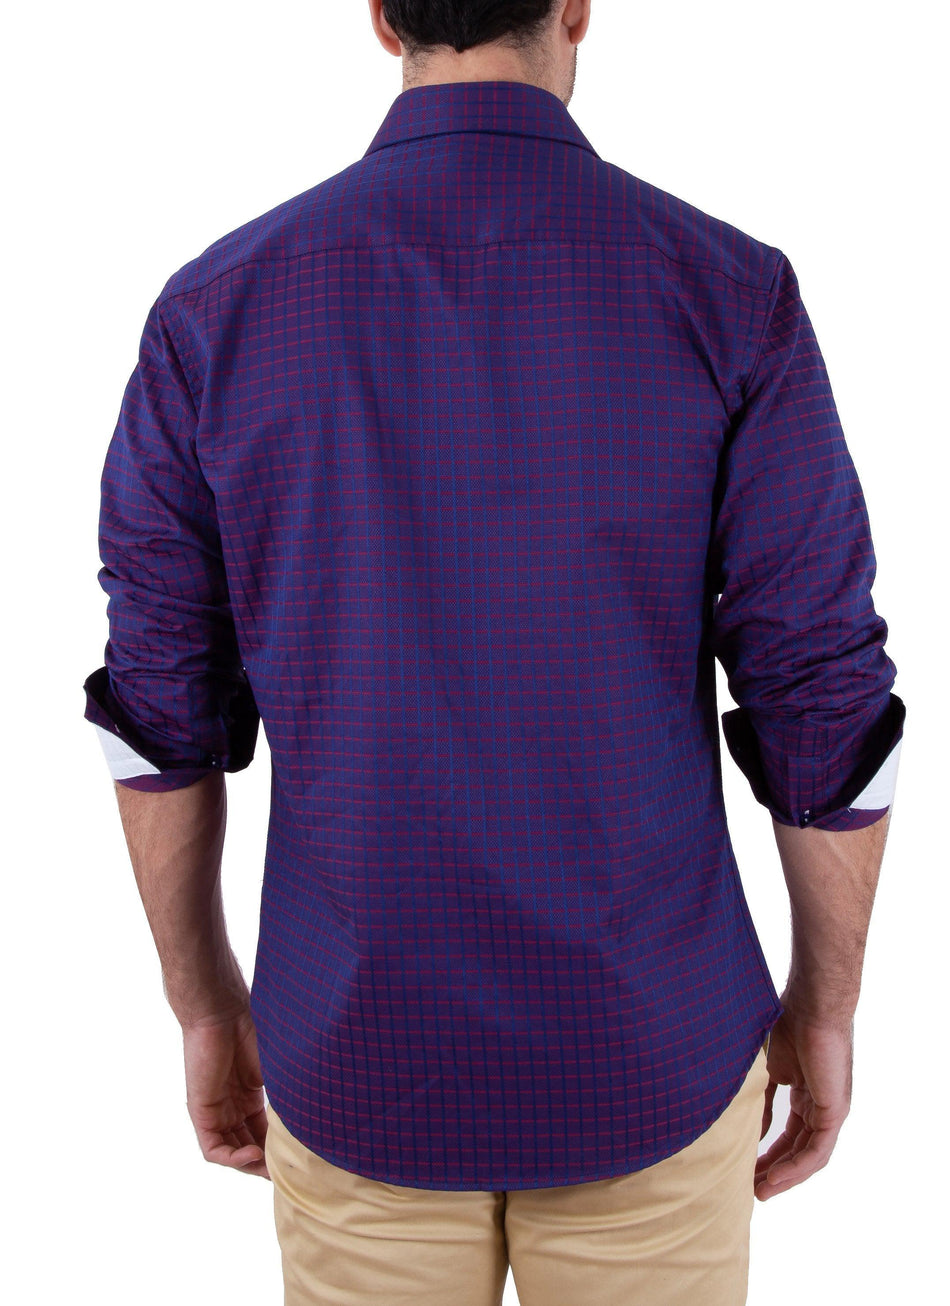 182413 - Men's Purple Button Up Long Sleeve Dress Shirt